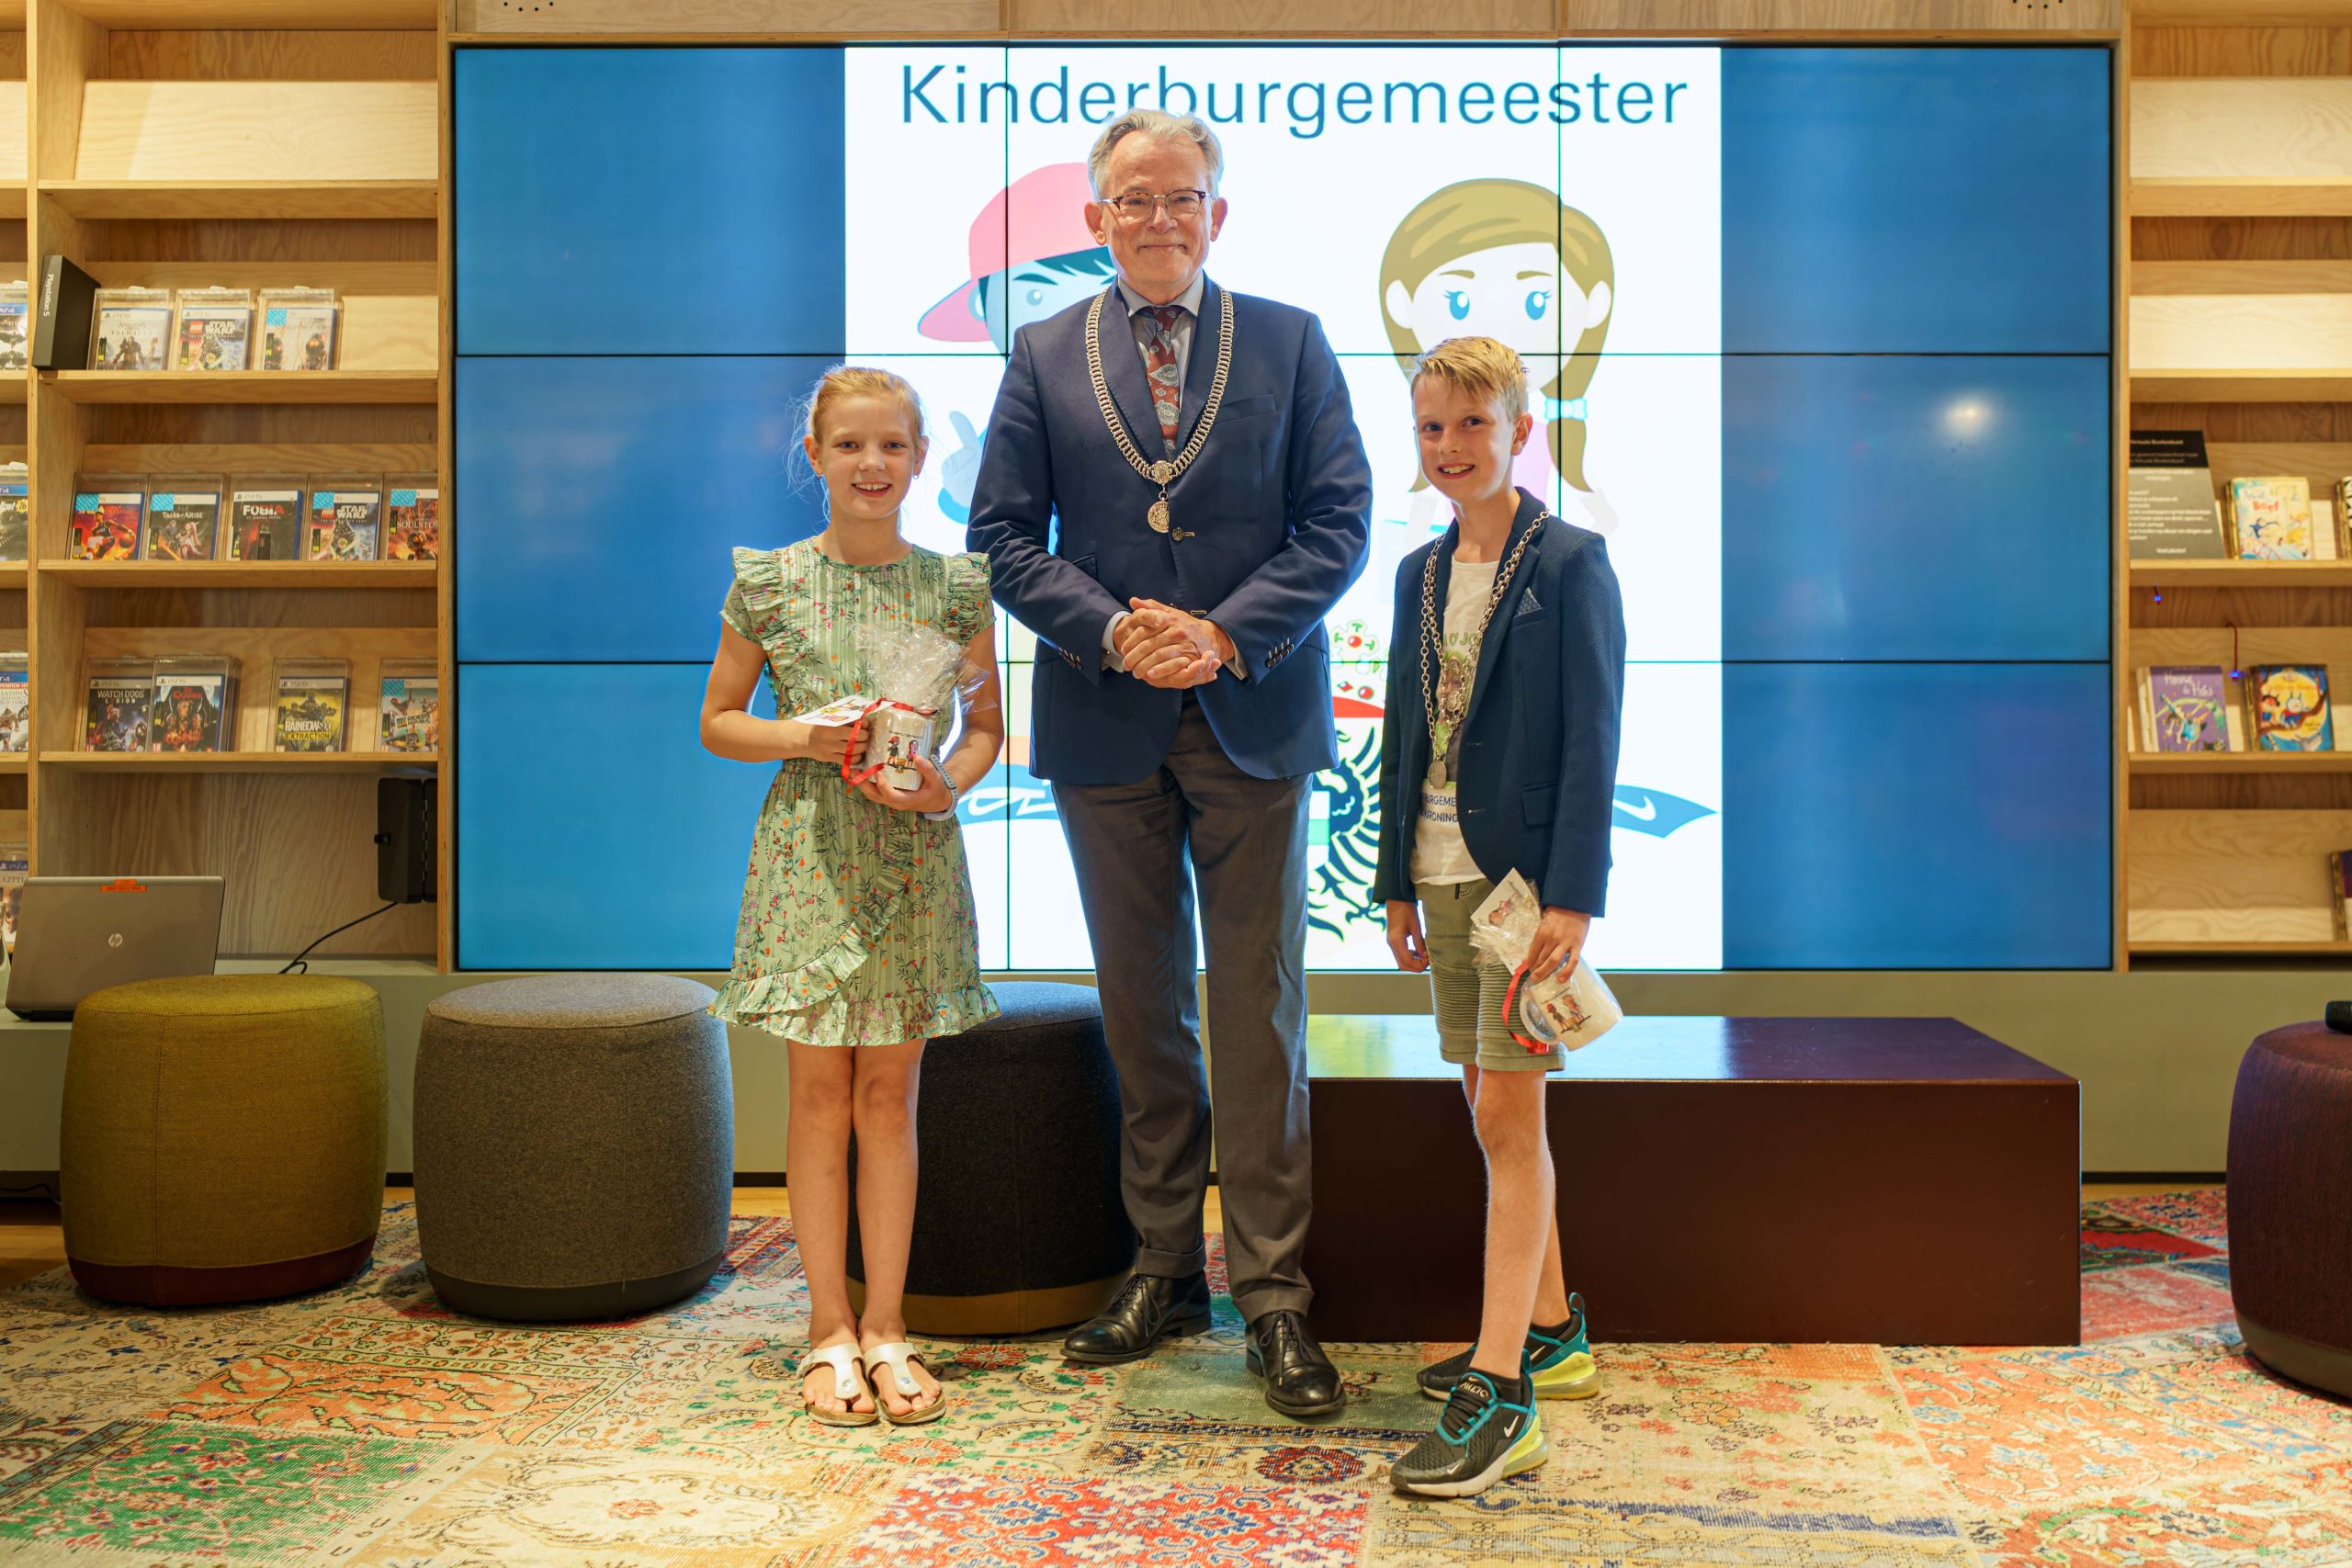 V.l.n.r.: loco-kinderburgemeester Ise, burgemeester Koen Schuiling en kinderburgemeester Jorn. Foto | Gemeente Groningen